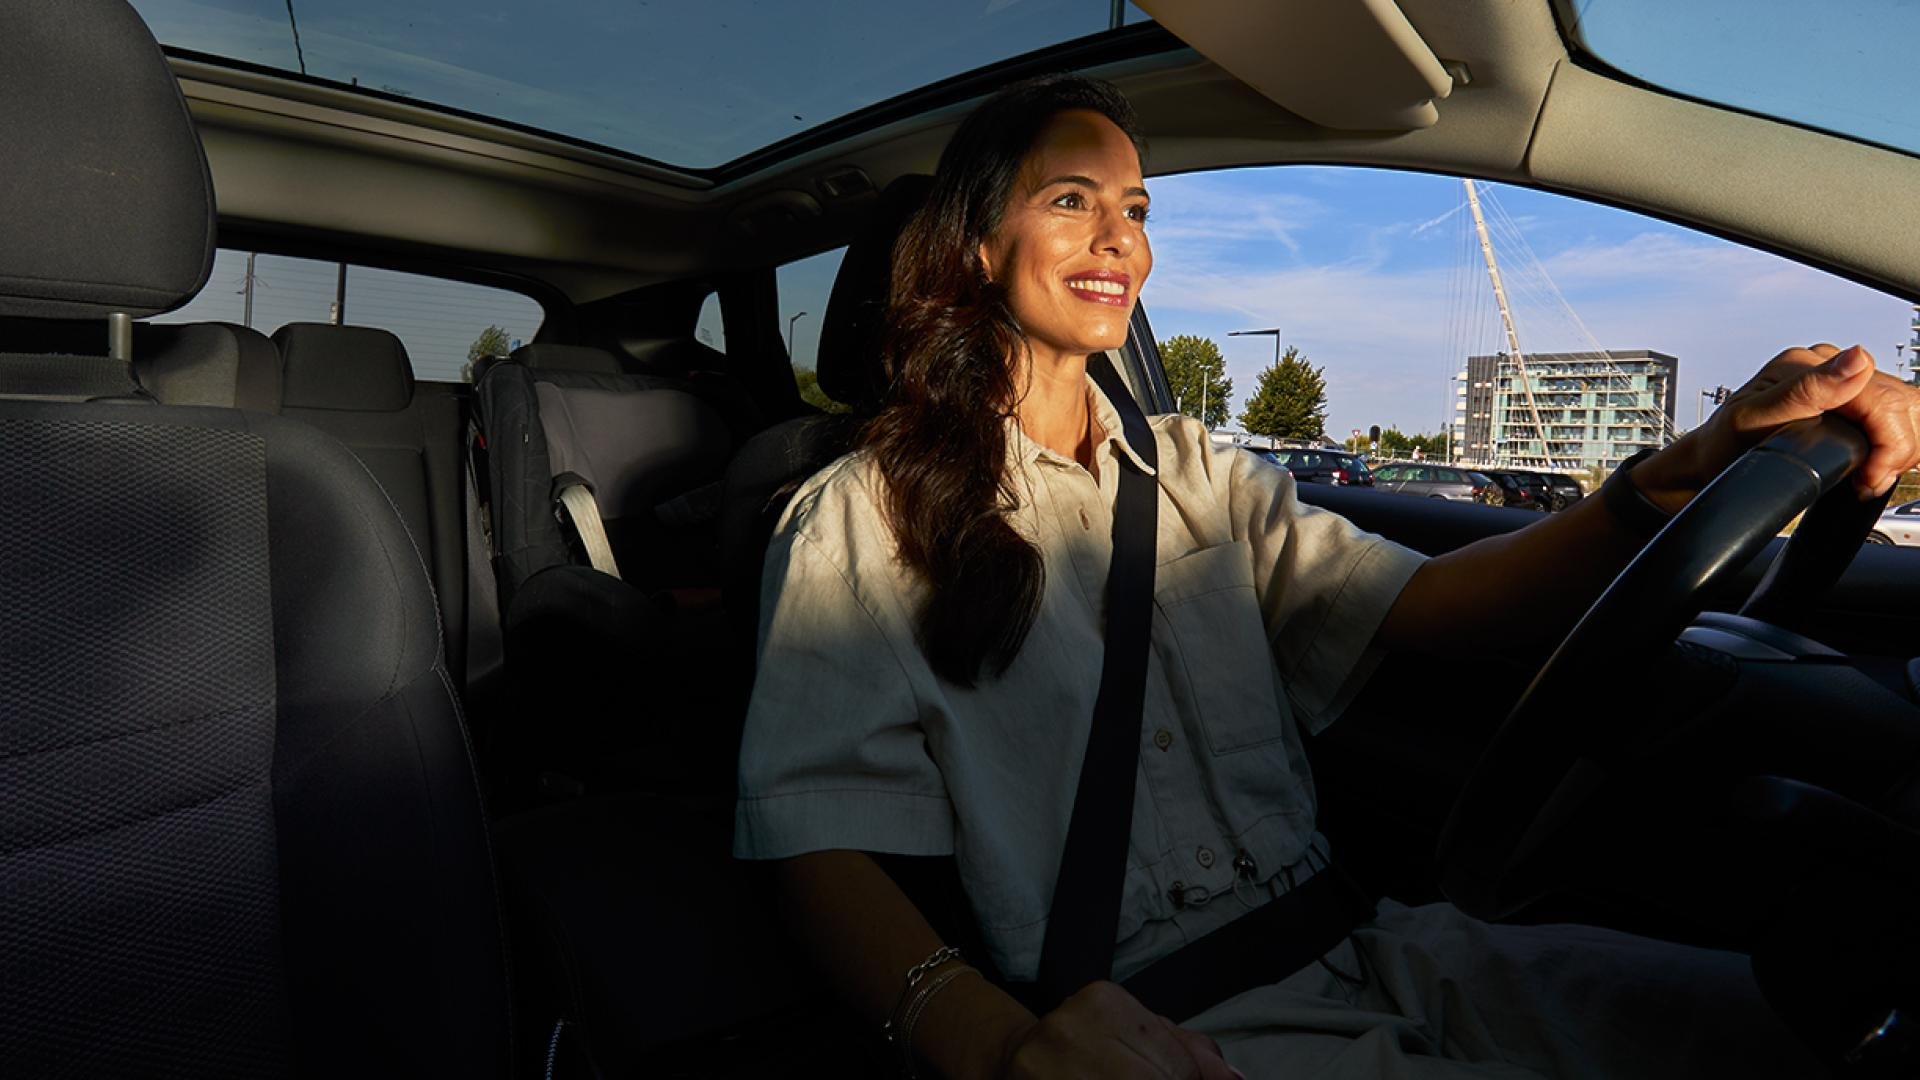 Een vrouw rijdt glimlachend Haarlemmermeer tegemoet. Ze is op weg naar haar nieuwe baan.